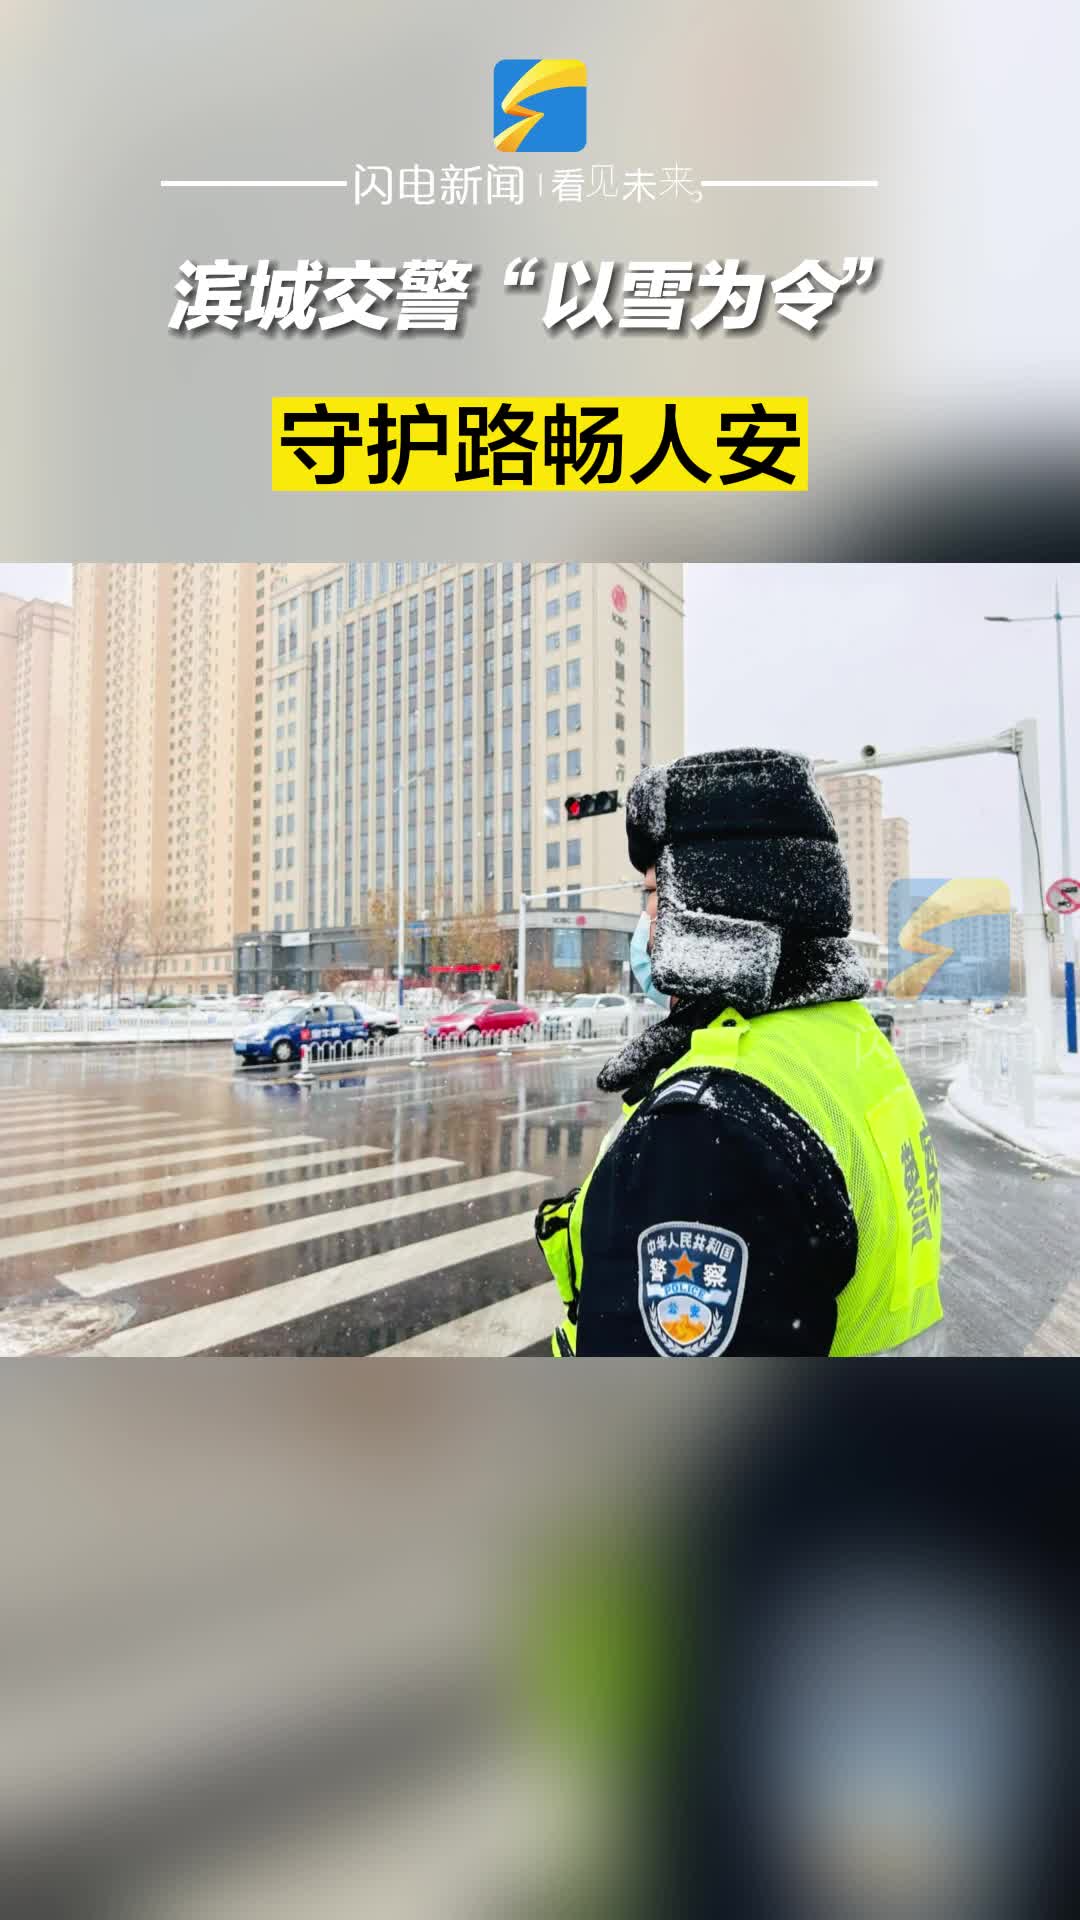 滨城交警“以雪为令” 守护路畅人安